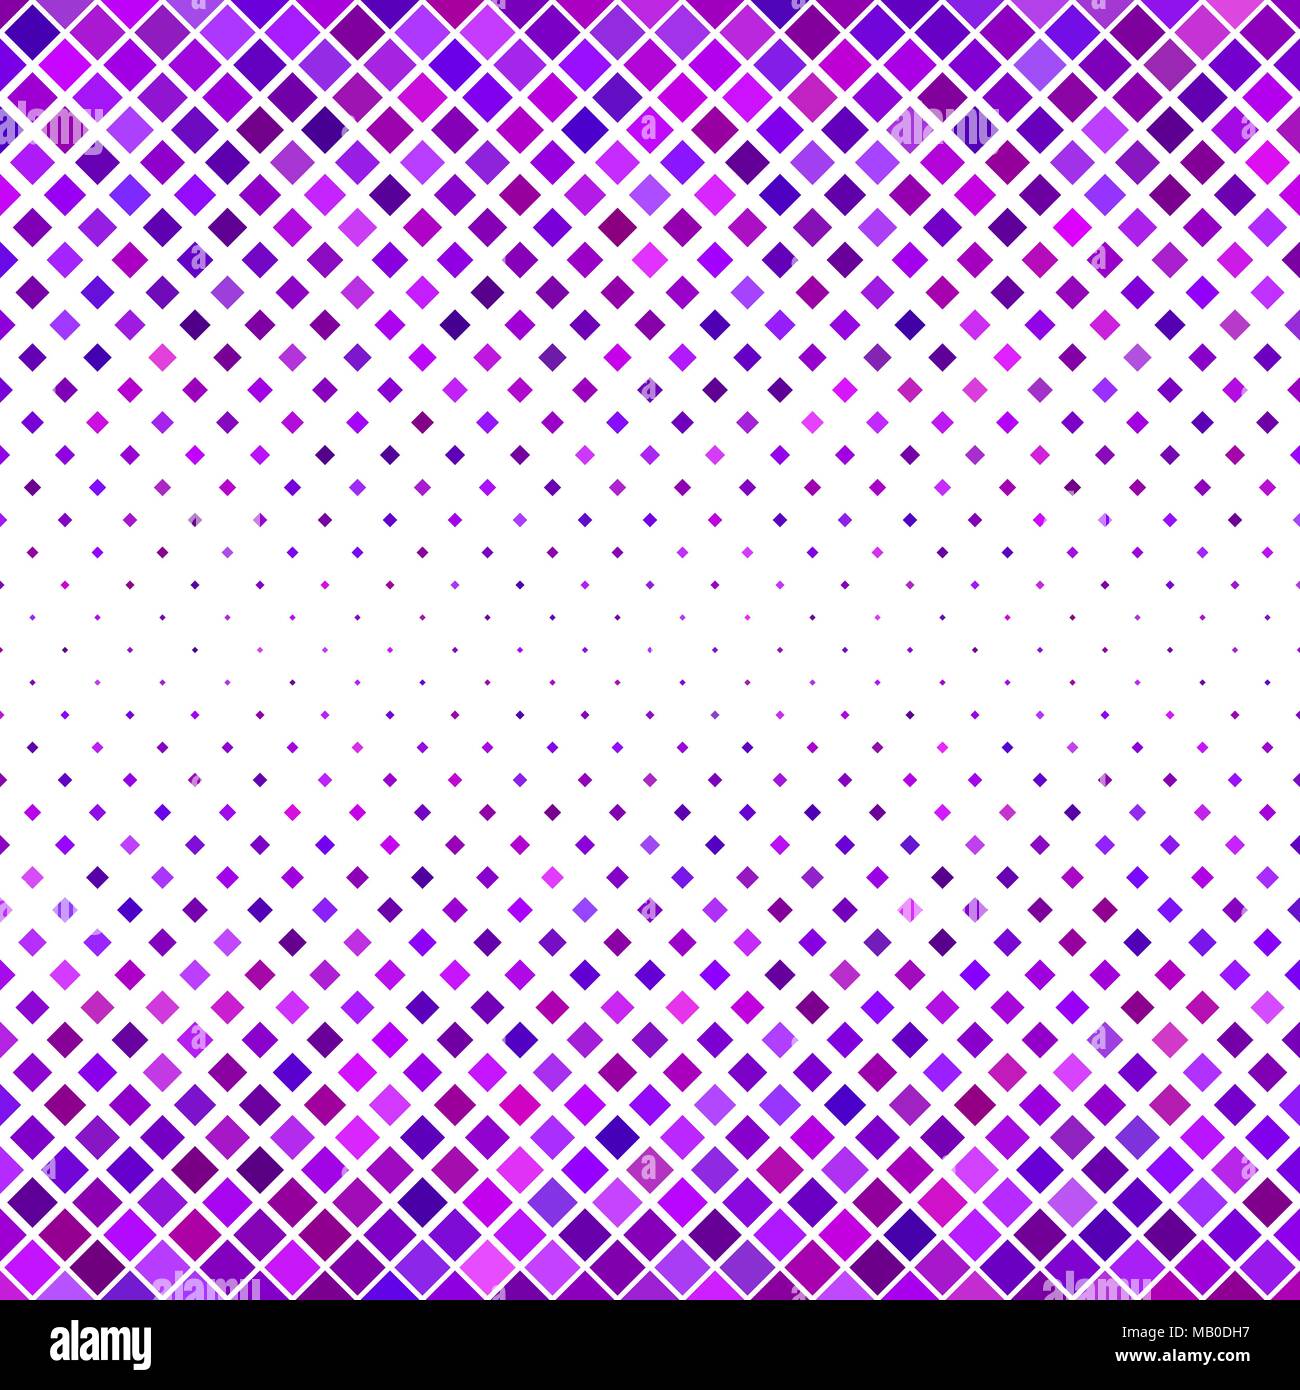 Résumé motif carré diagonal - arrière-plan graphique de scénario à partir de carrés dans des tons violet Illustration de Vecteur